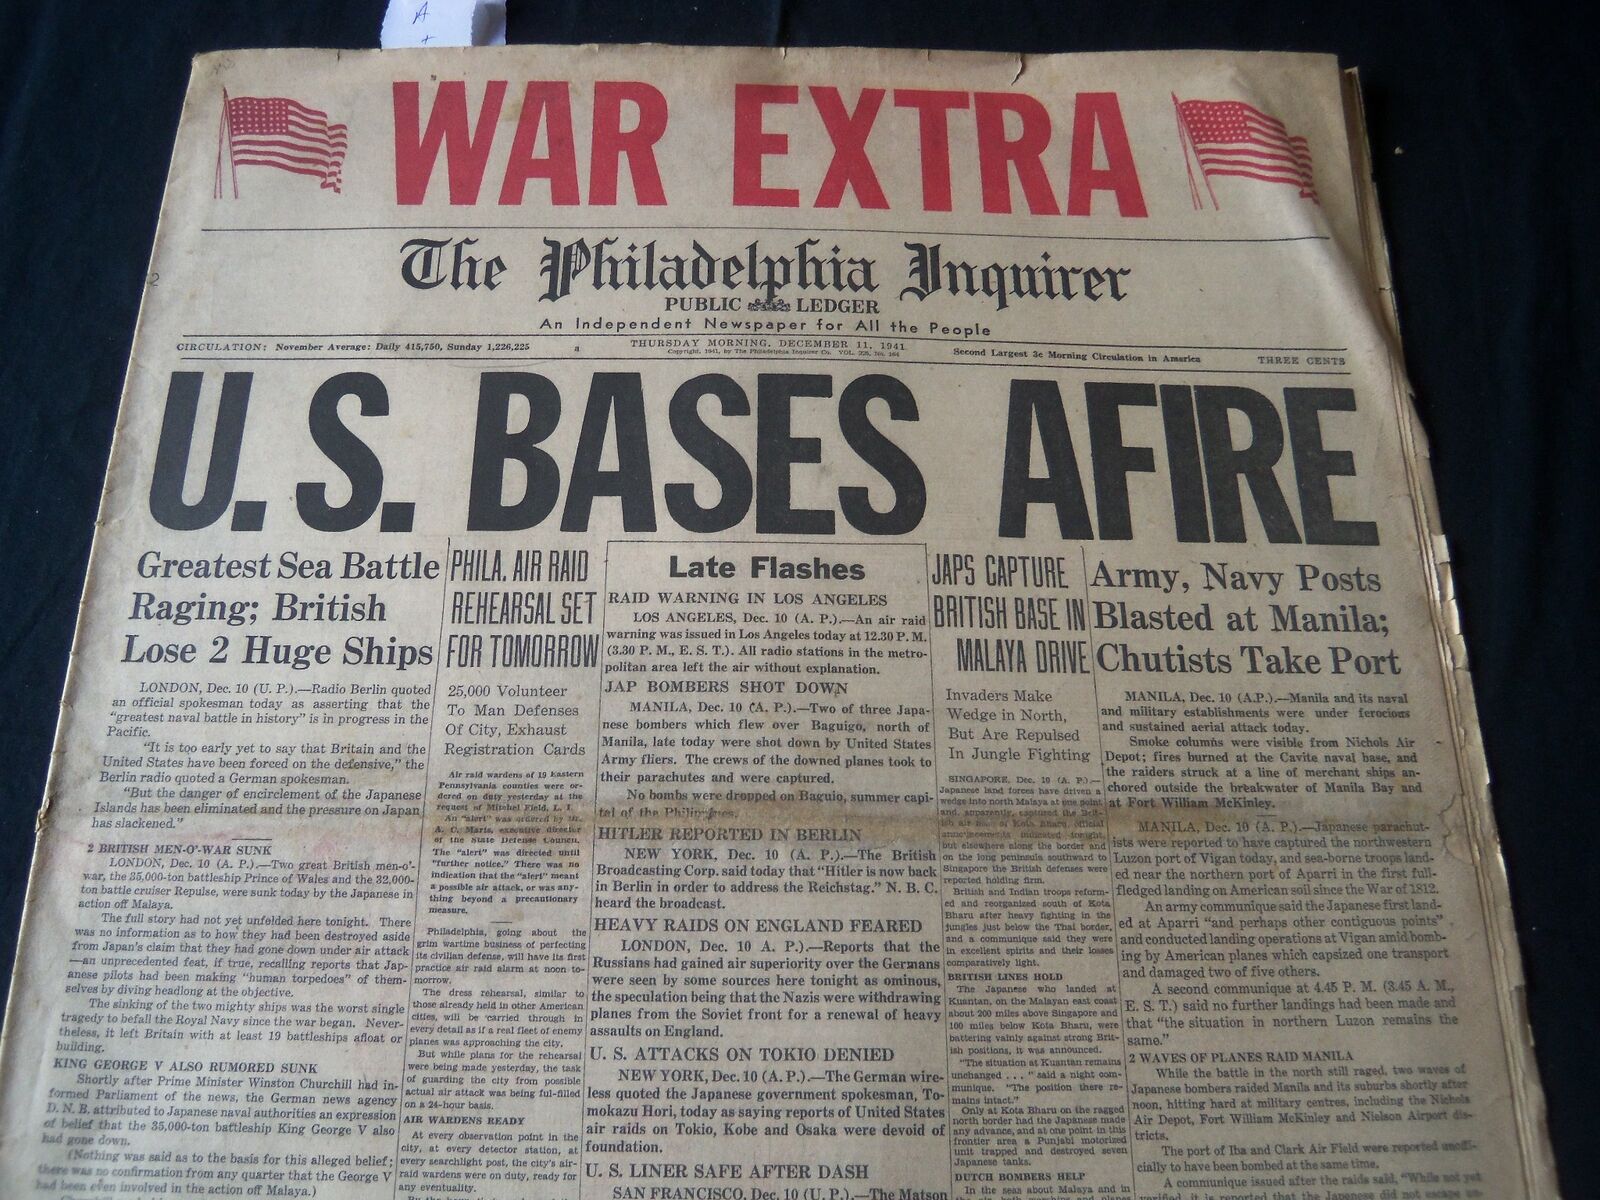 1941 DECEMBER 11 PHILADELPHIA INQUIRER NEWSPAPER - U. S. BASES AFIRE - NT 7243